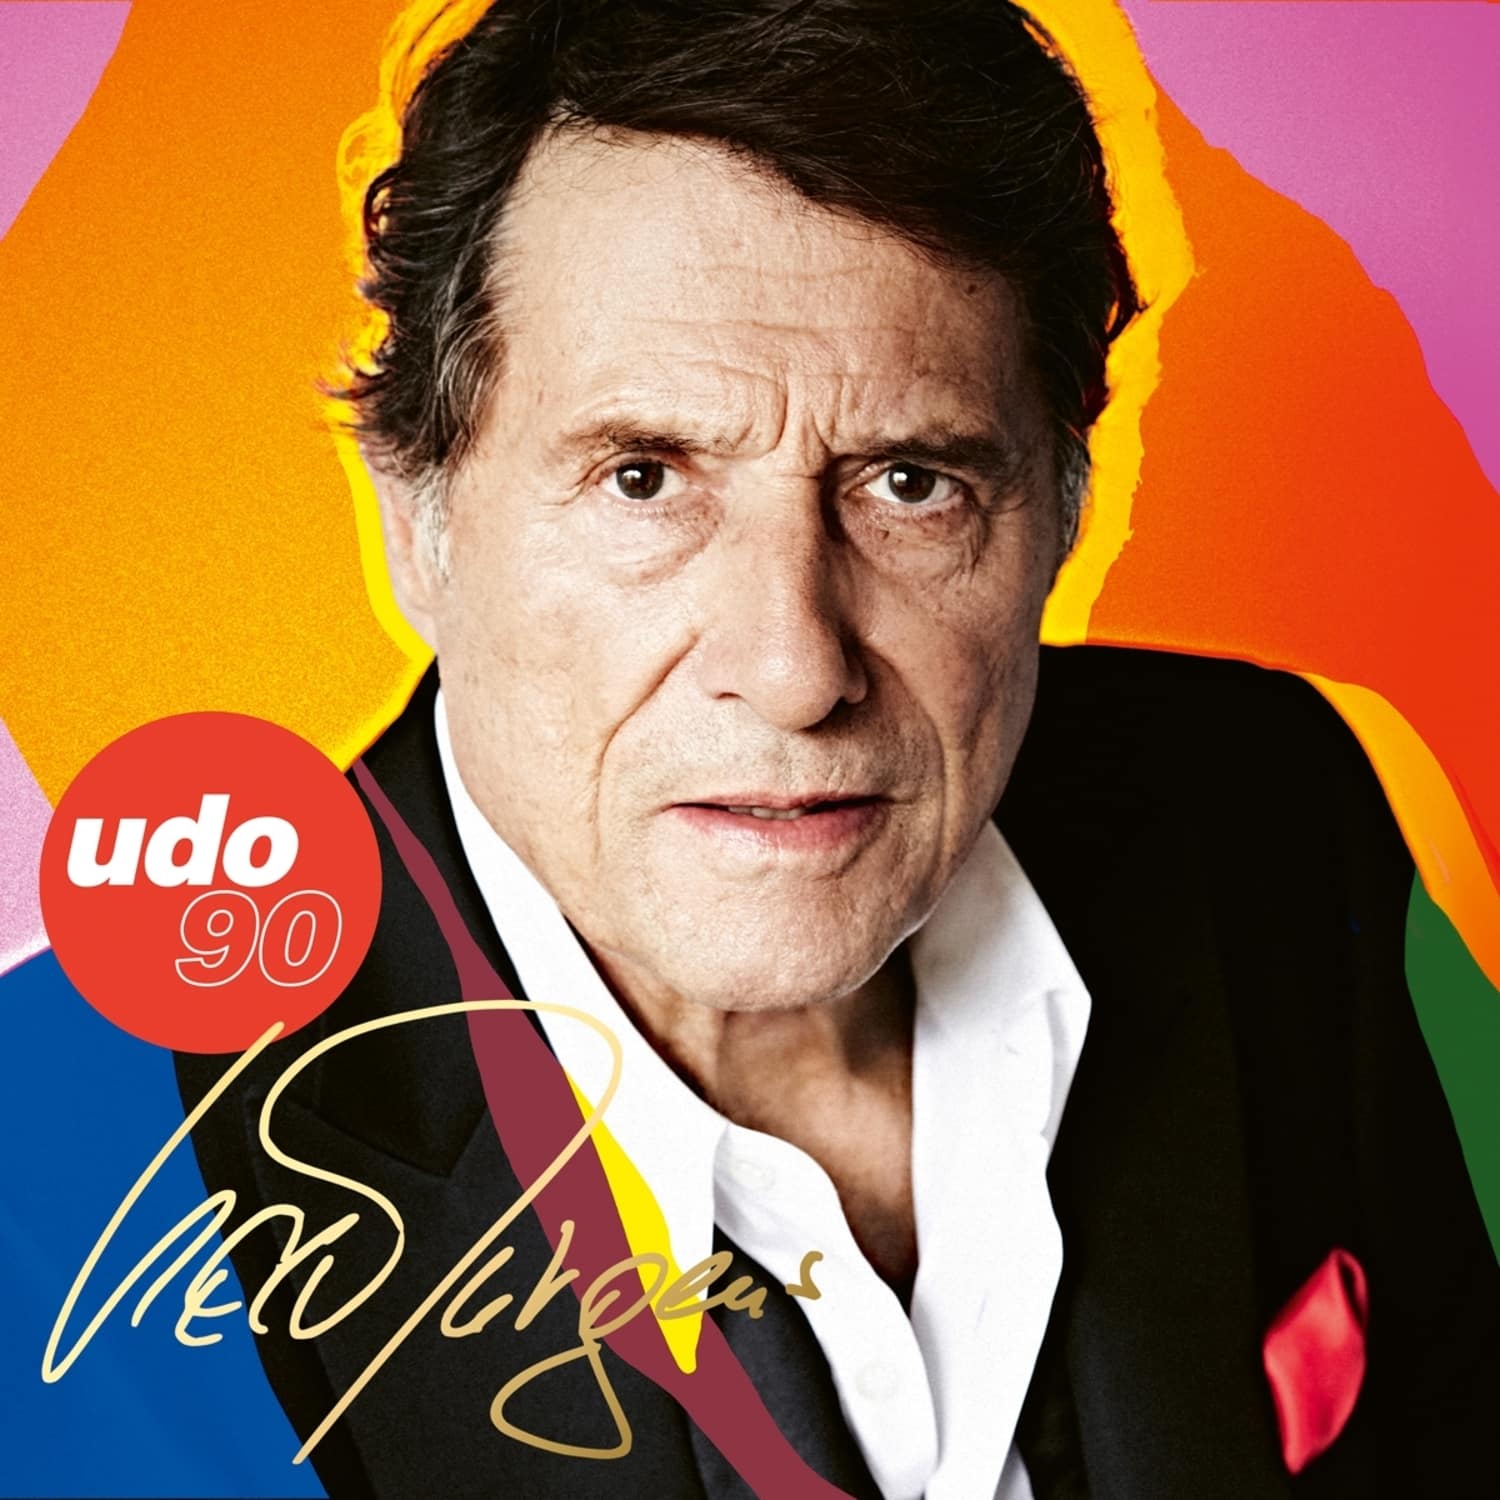 Udo Jrgens - UDO 90 